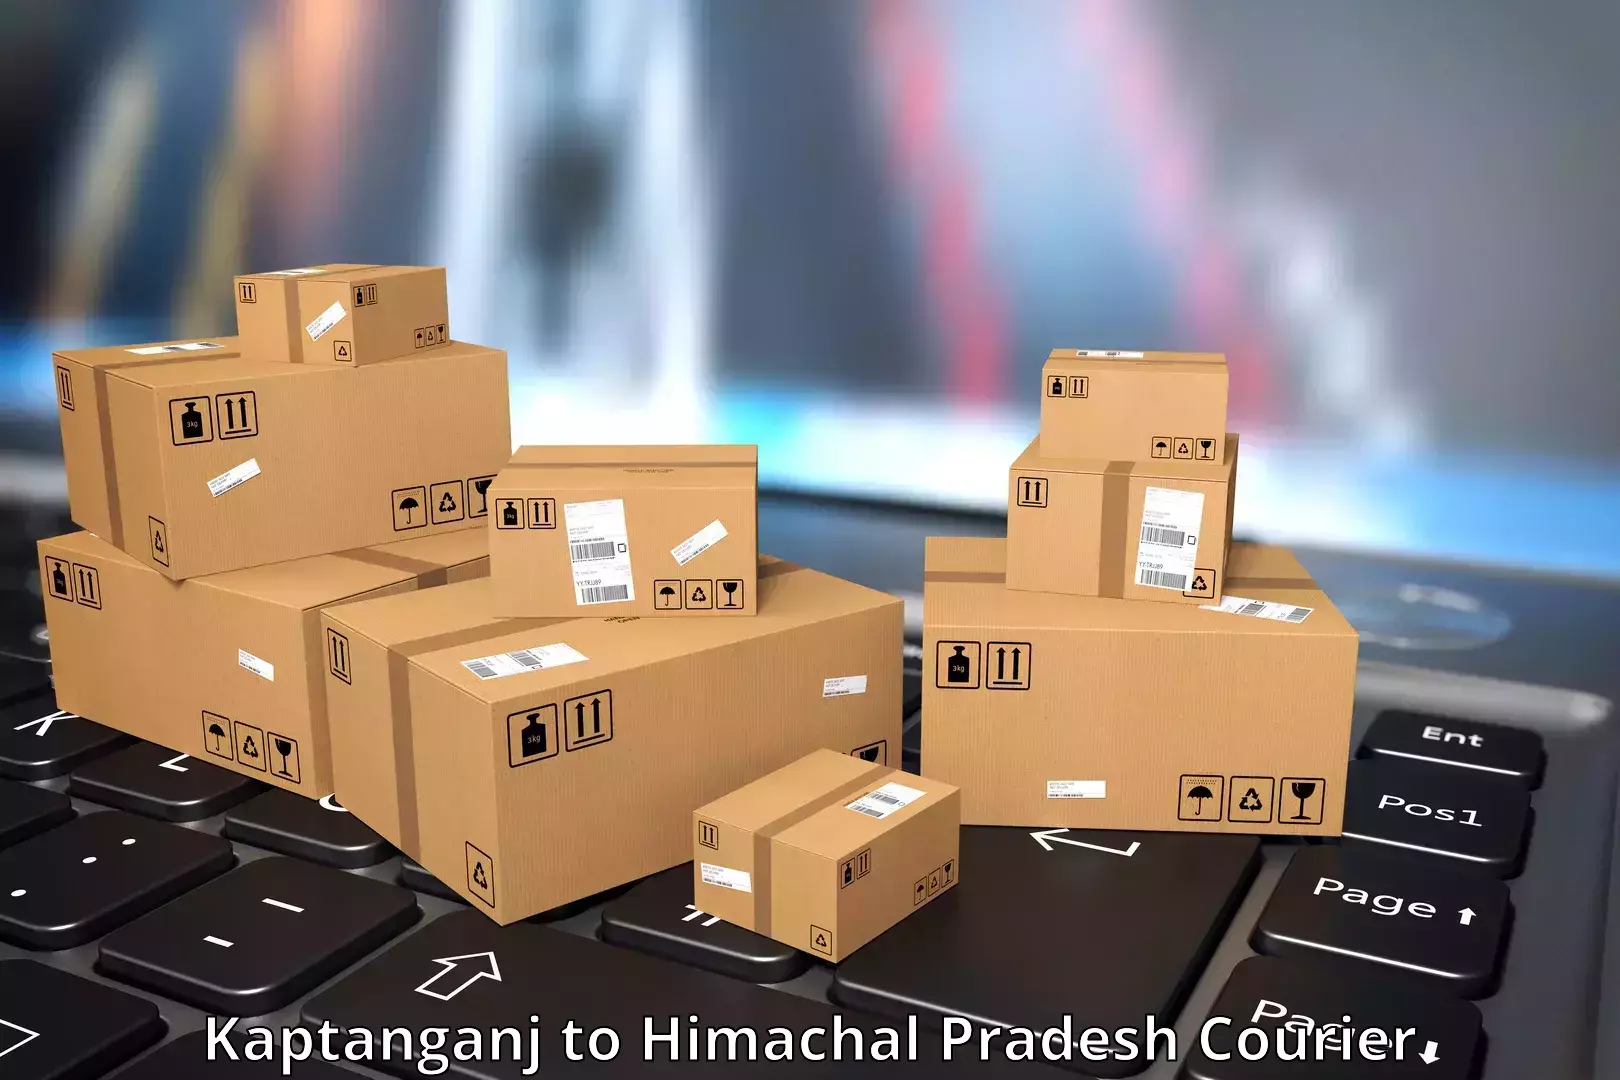 Express package handling Kaptanganj to Kunihar